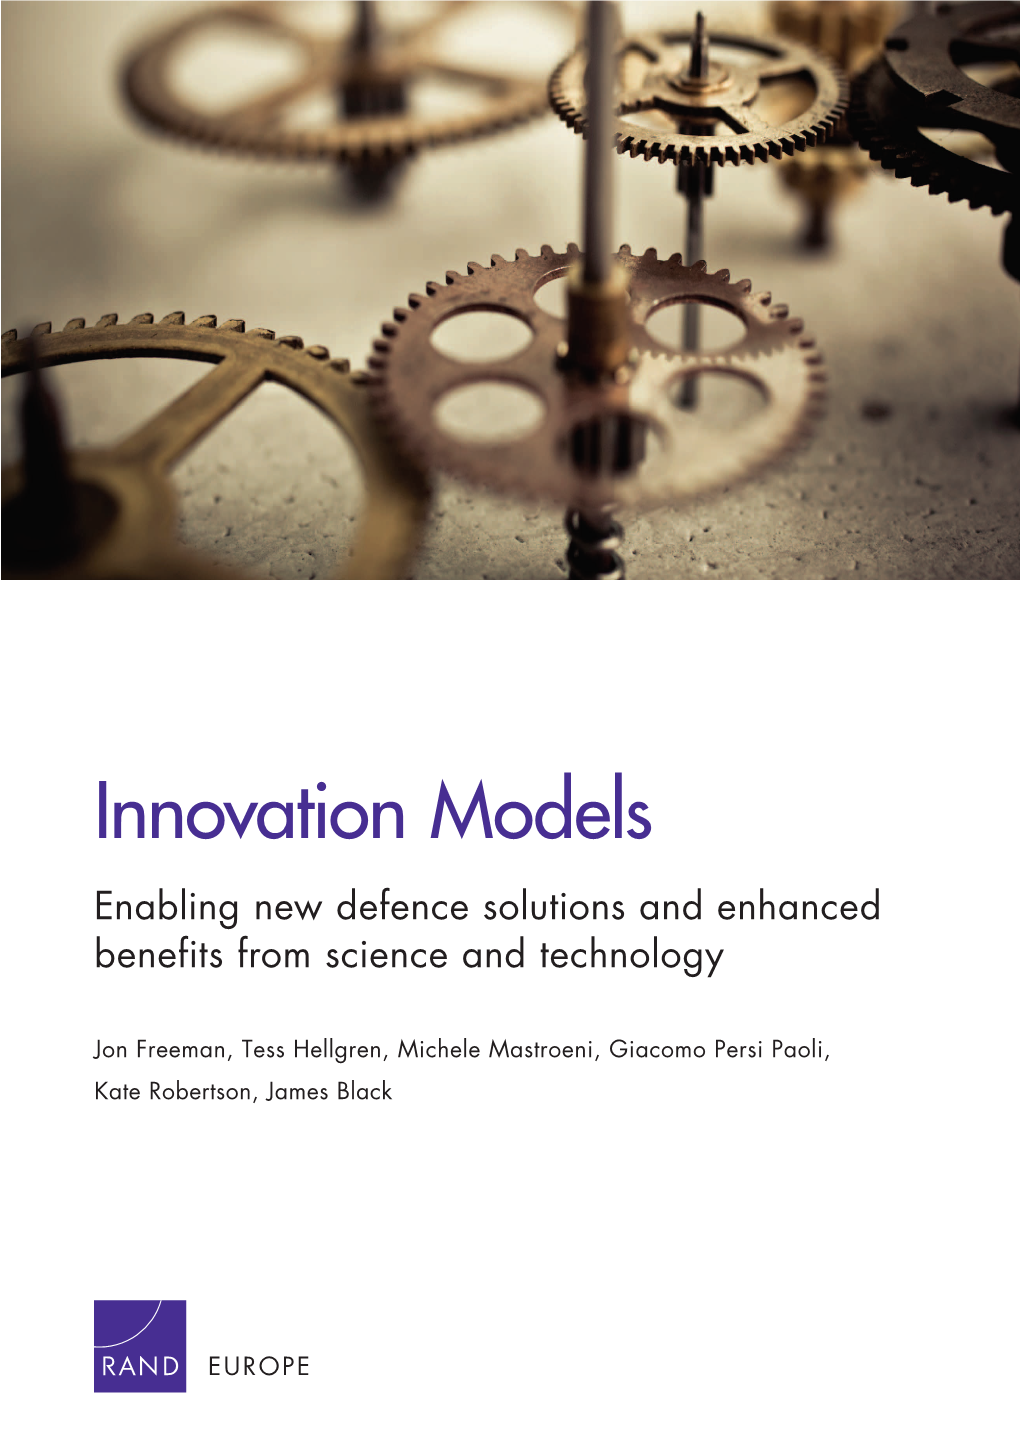 Innovation Models